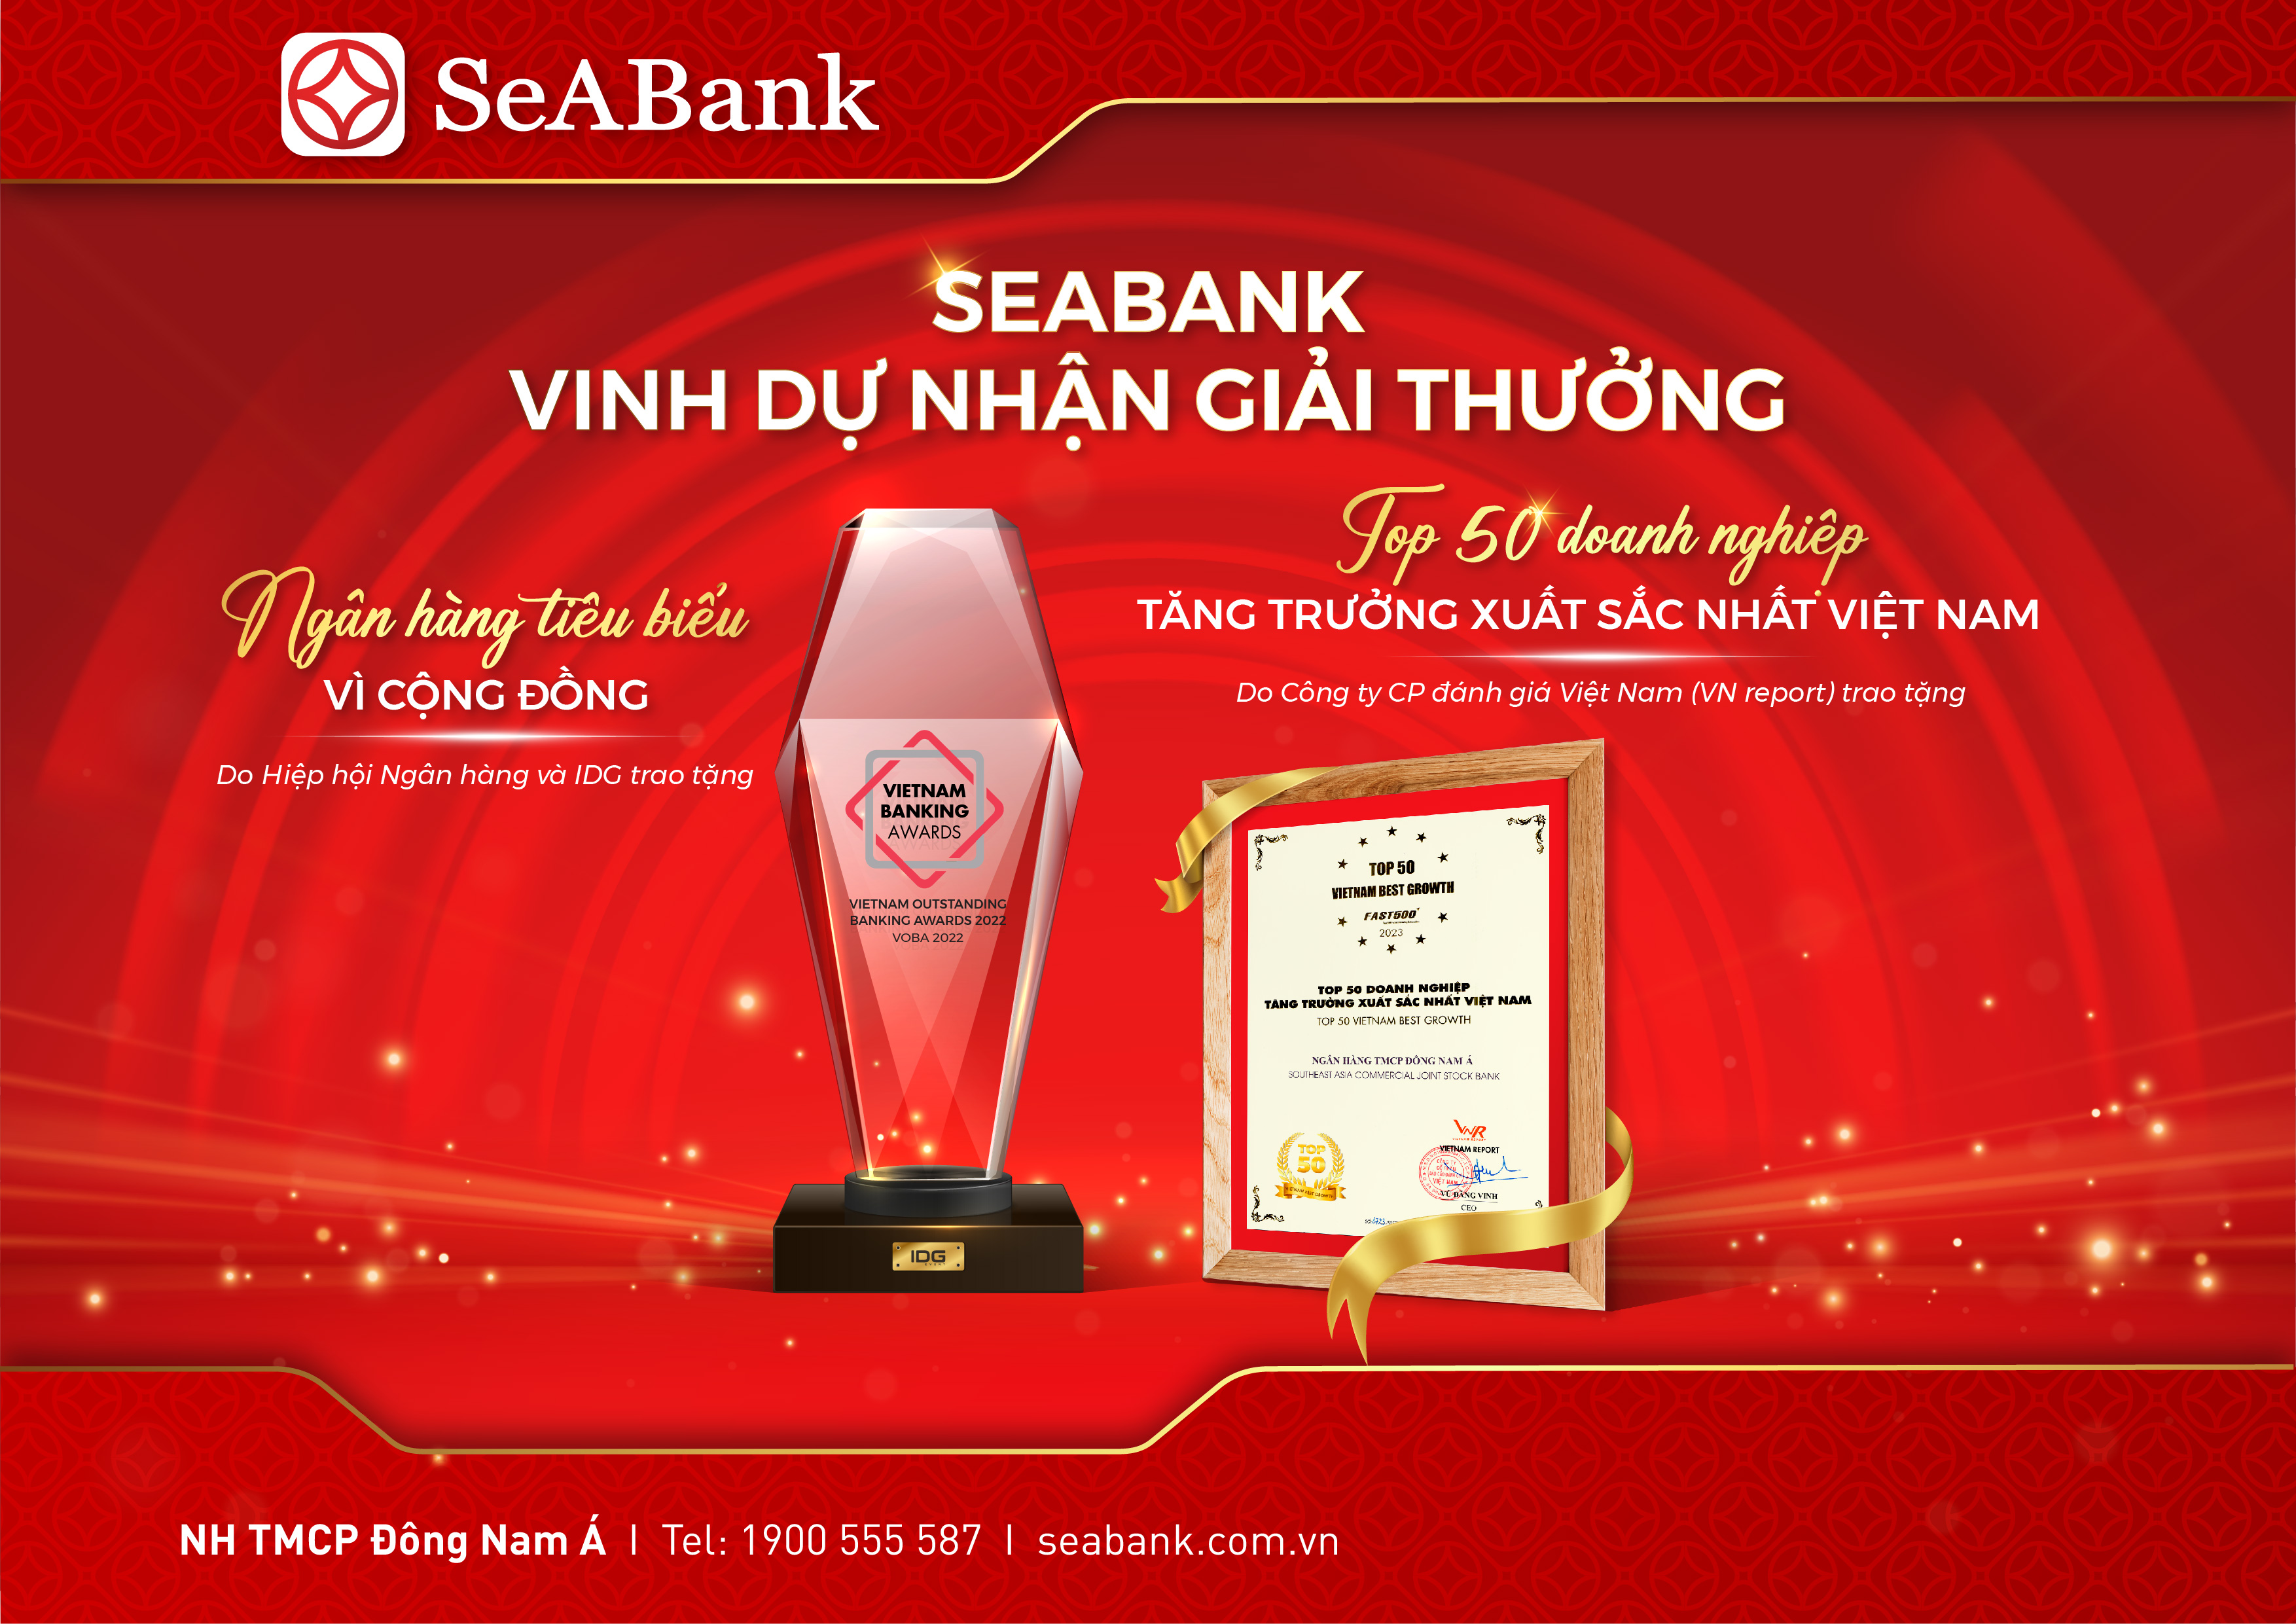 Kinh doanh - SeABank được vinh danh Ngân hàng tiêu biểu vì cộng đồng 2022 và Top 50 Doanh nghiệp tăng trưởng xuất sắc nhất Việt Nam